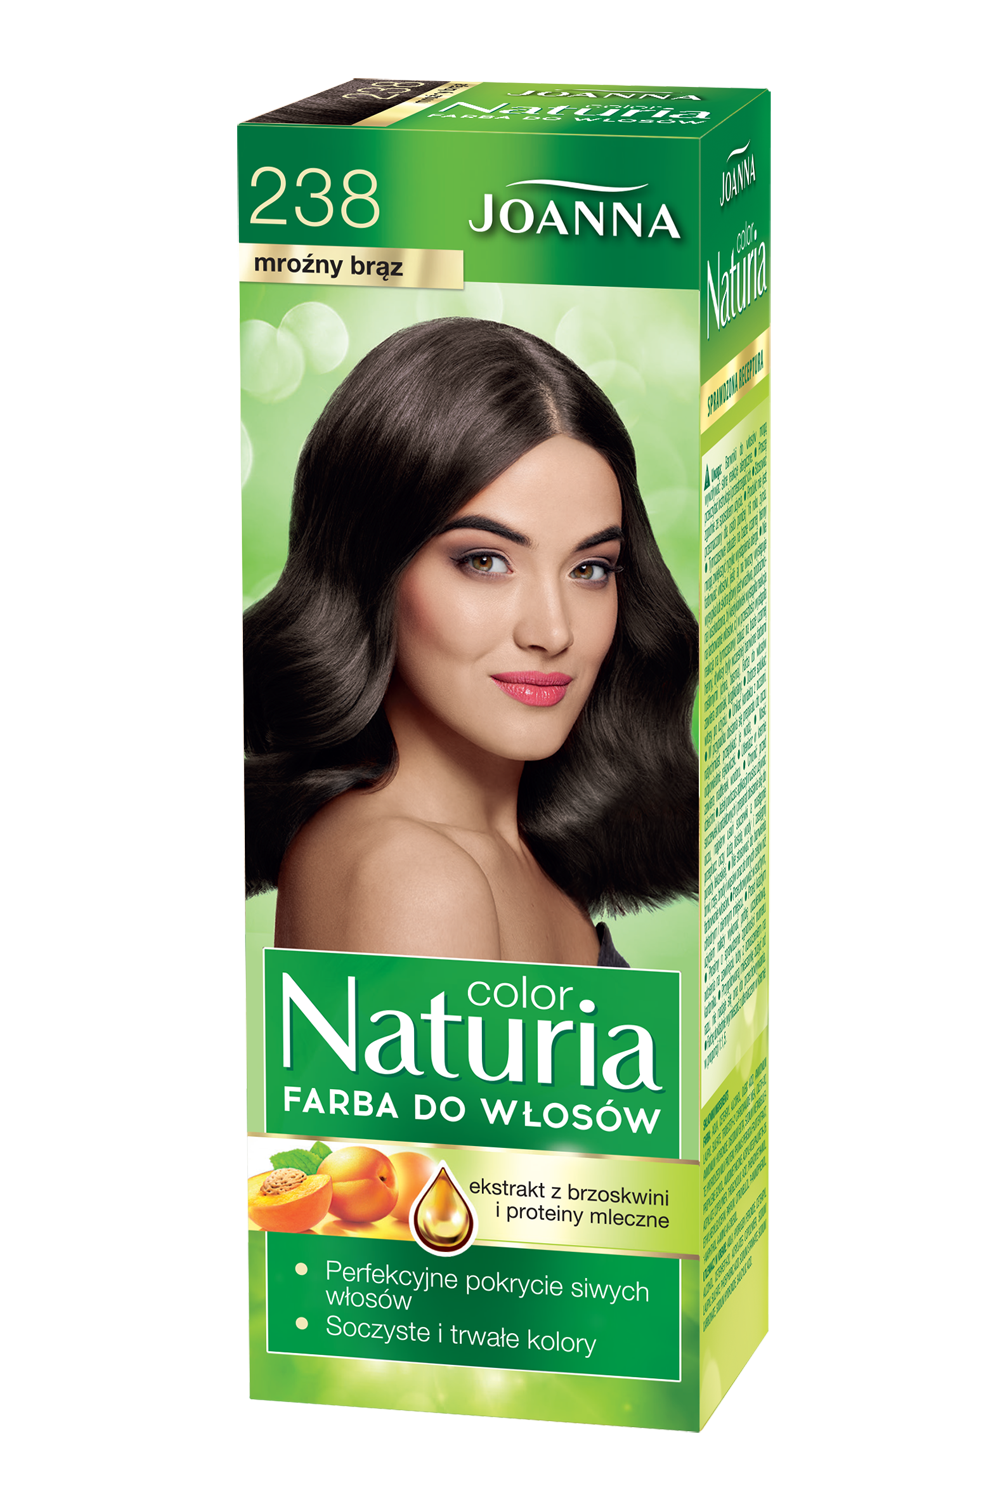 Farba do włosów Joanna Naturia Color w odcieniu nr 238 mroźny brąz